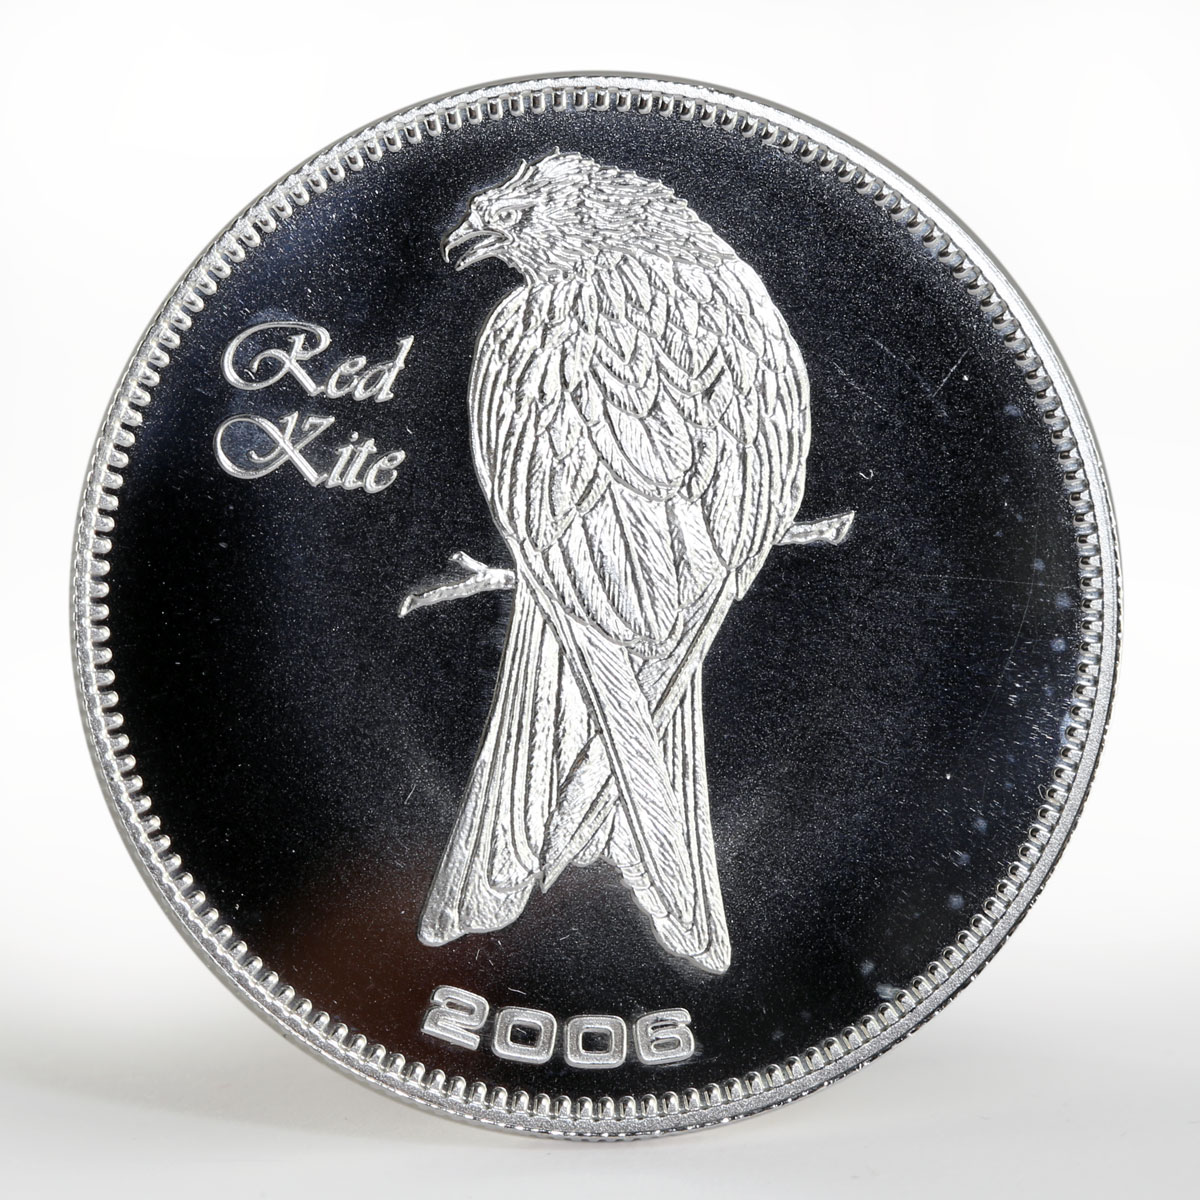 Cape Verde 50 Escudos Red Kite bird proof silver coin 2006